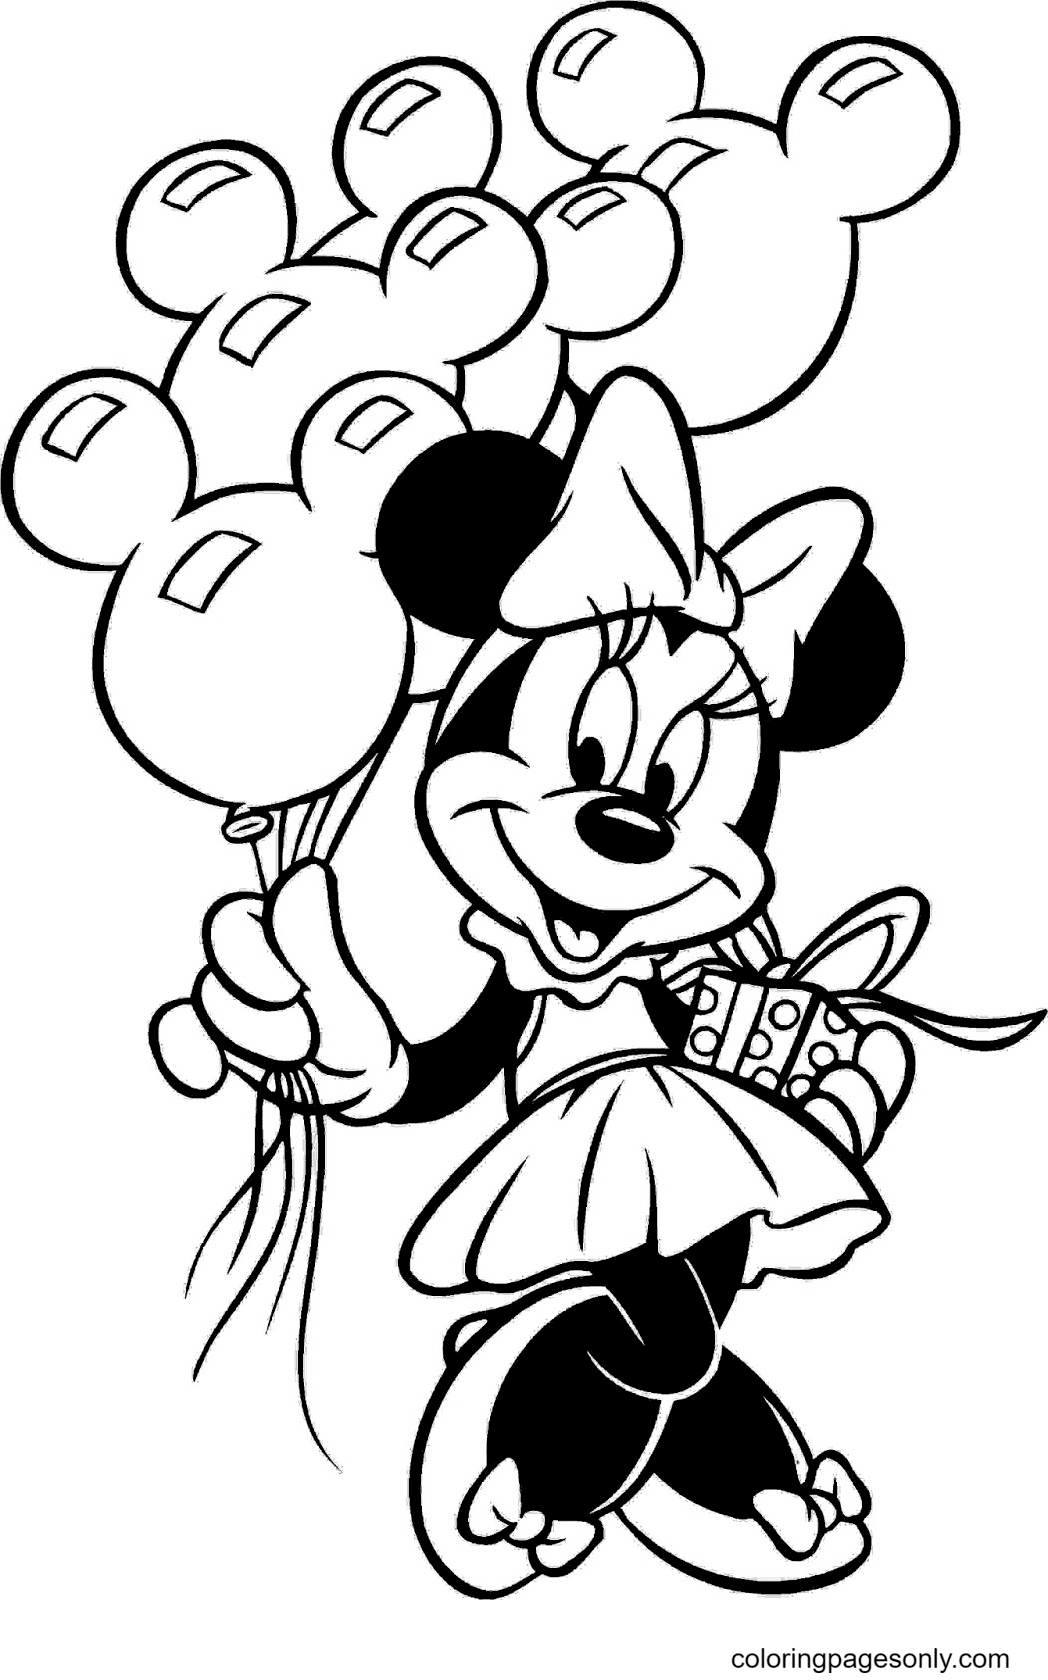 Minnie segurando balões e caixas de presente da Minnie Mouse